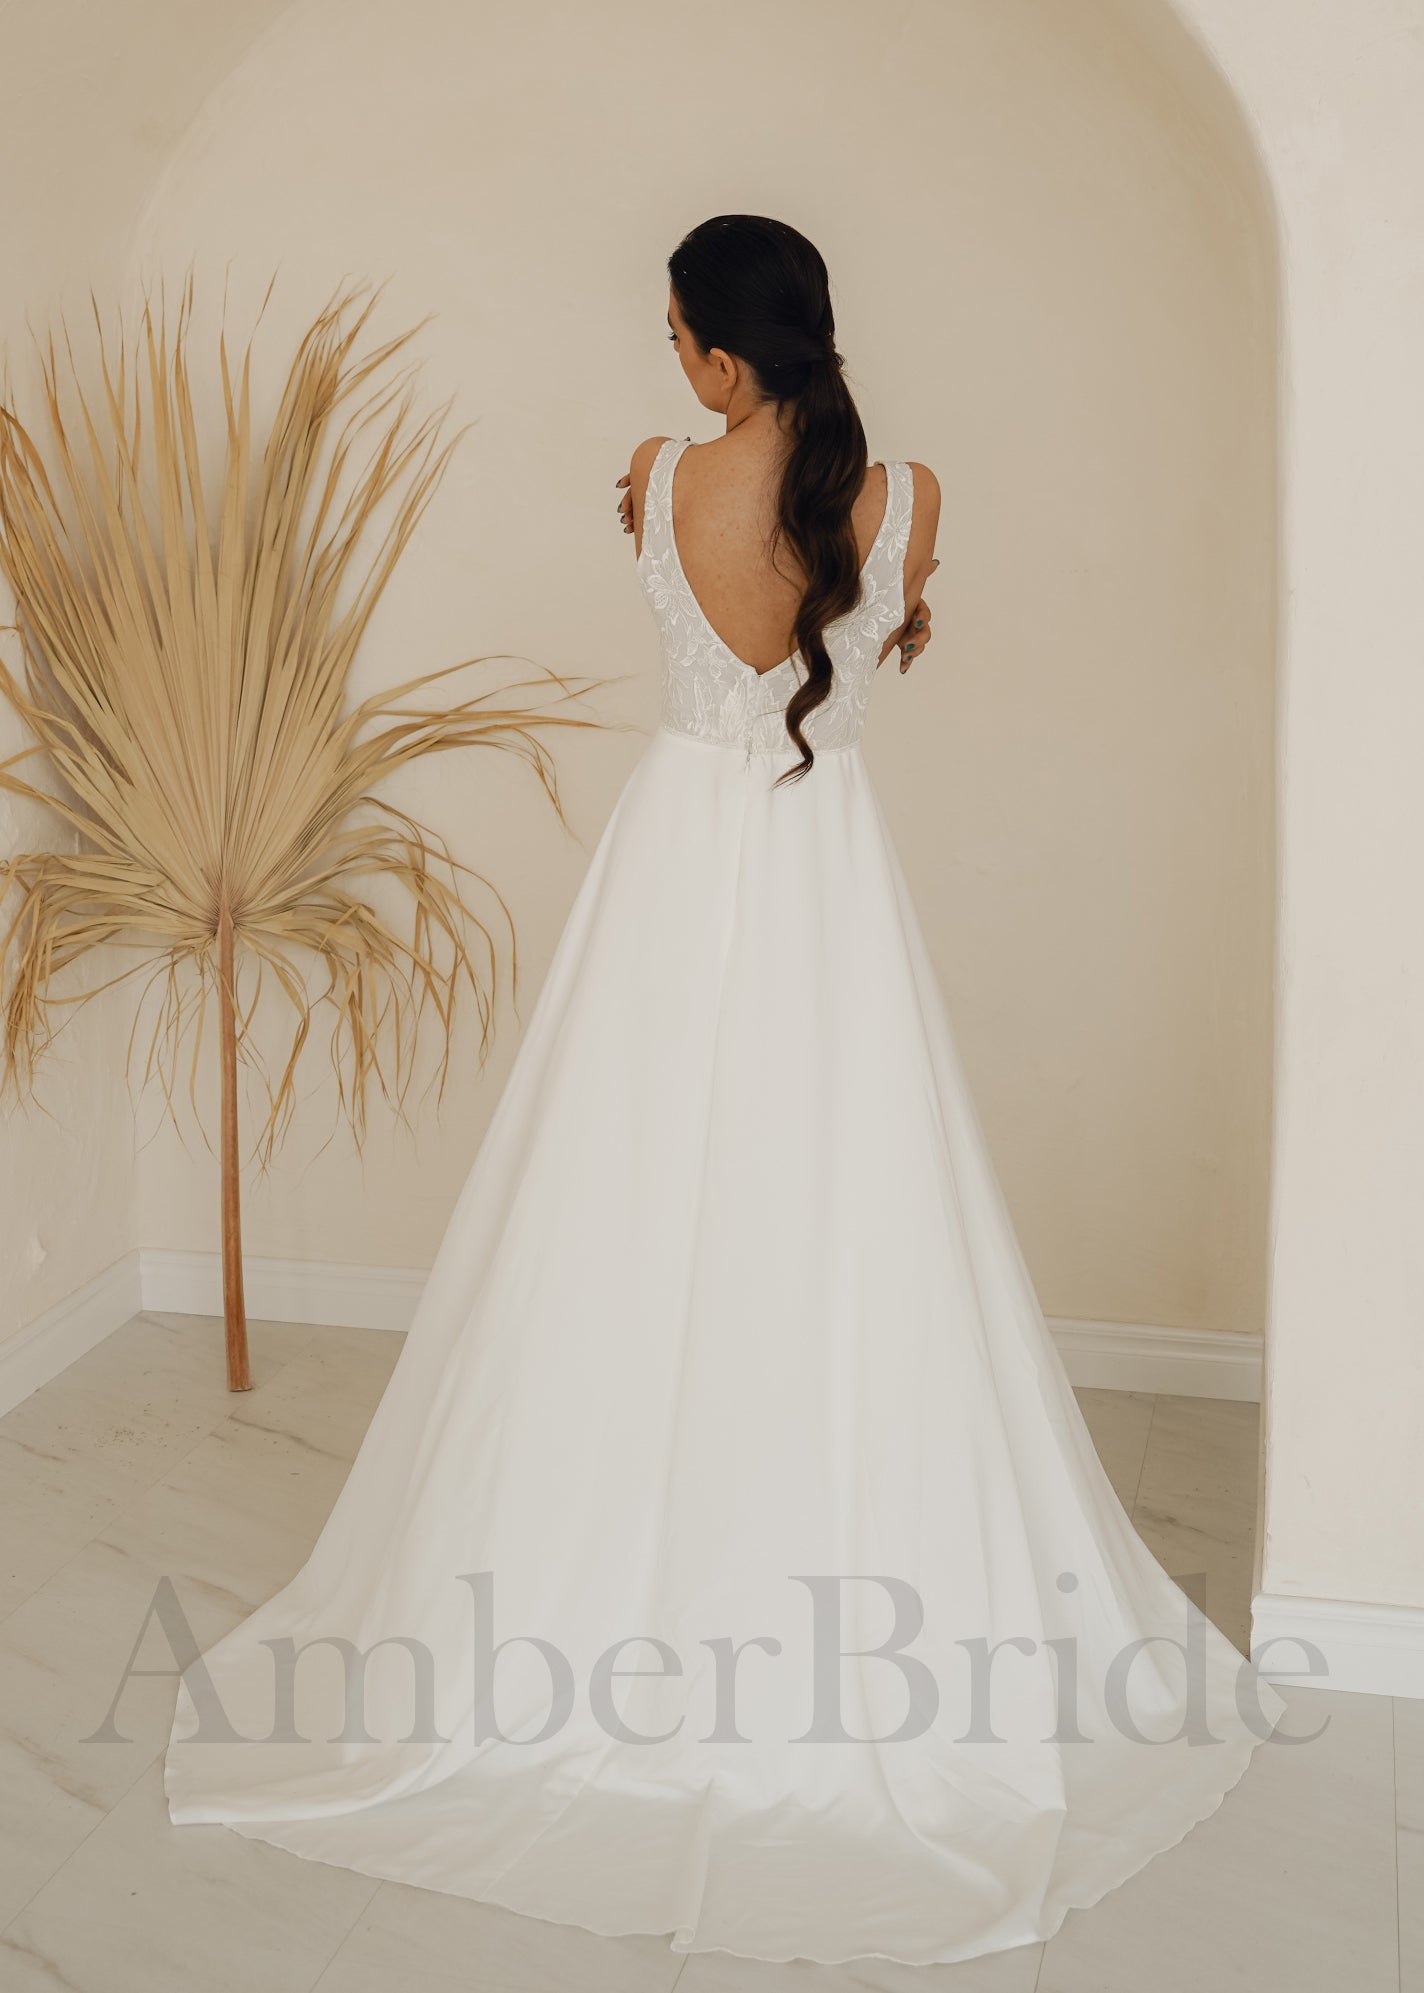 Boho A-Line Backless Wedding Dress with Chiffon Skirt